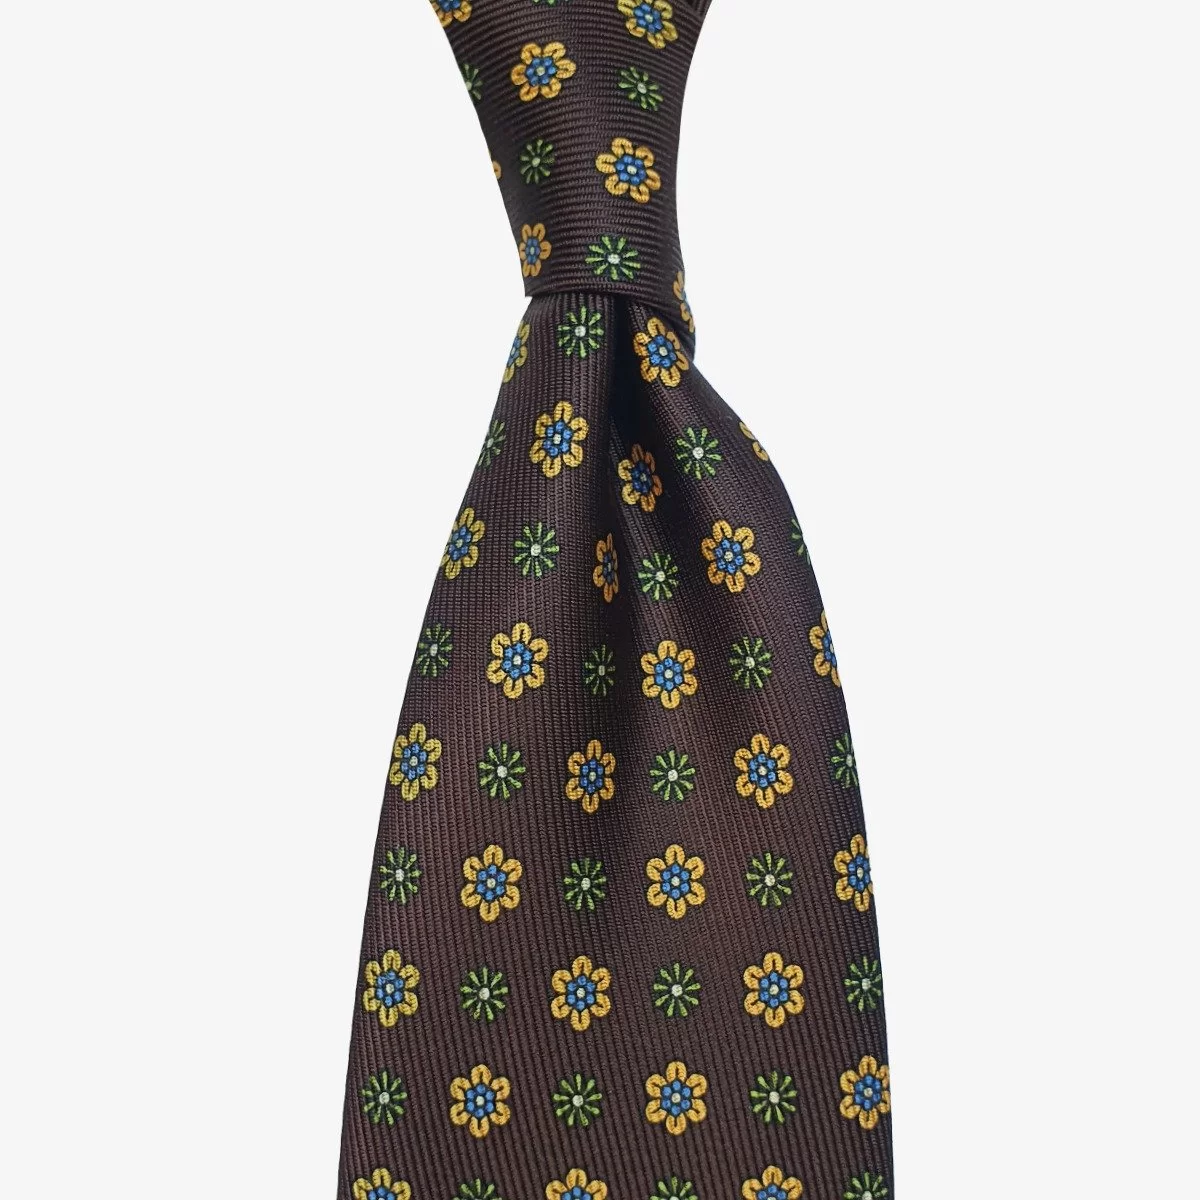 Shibumi Firenze 50oz dark brown silk tie with yellow flowers